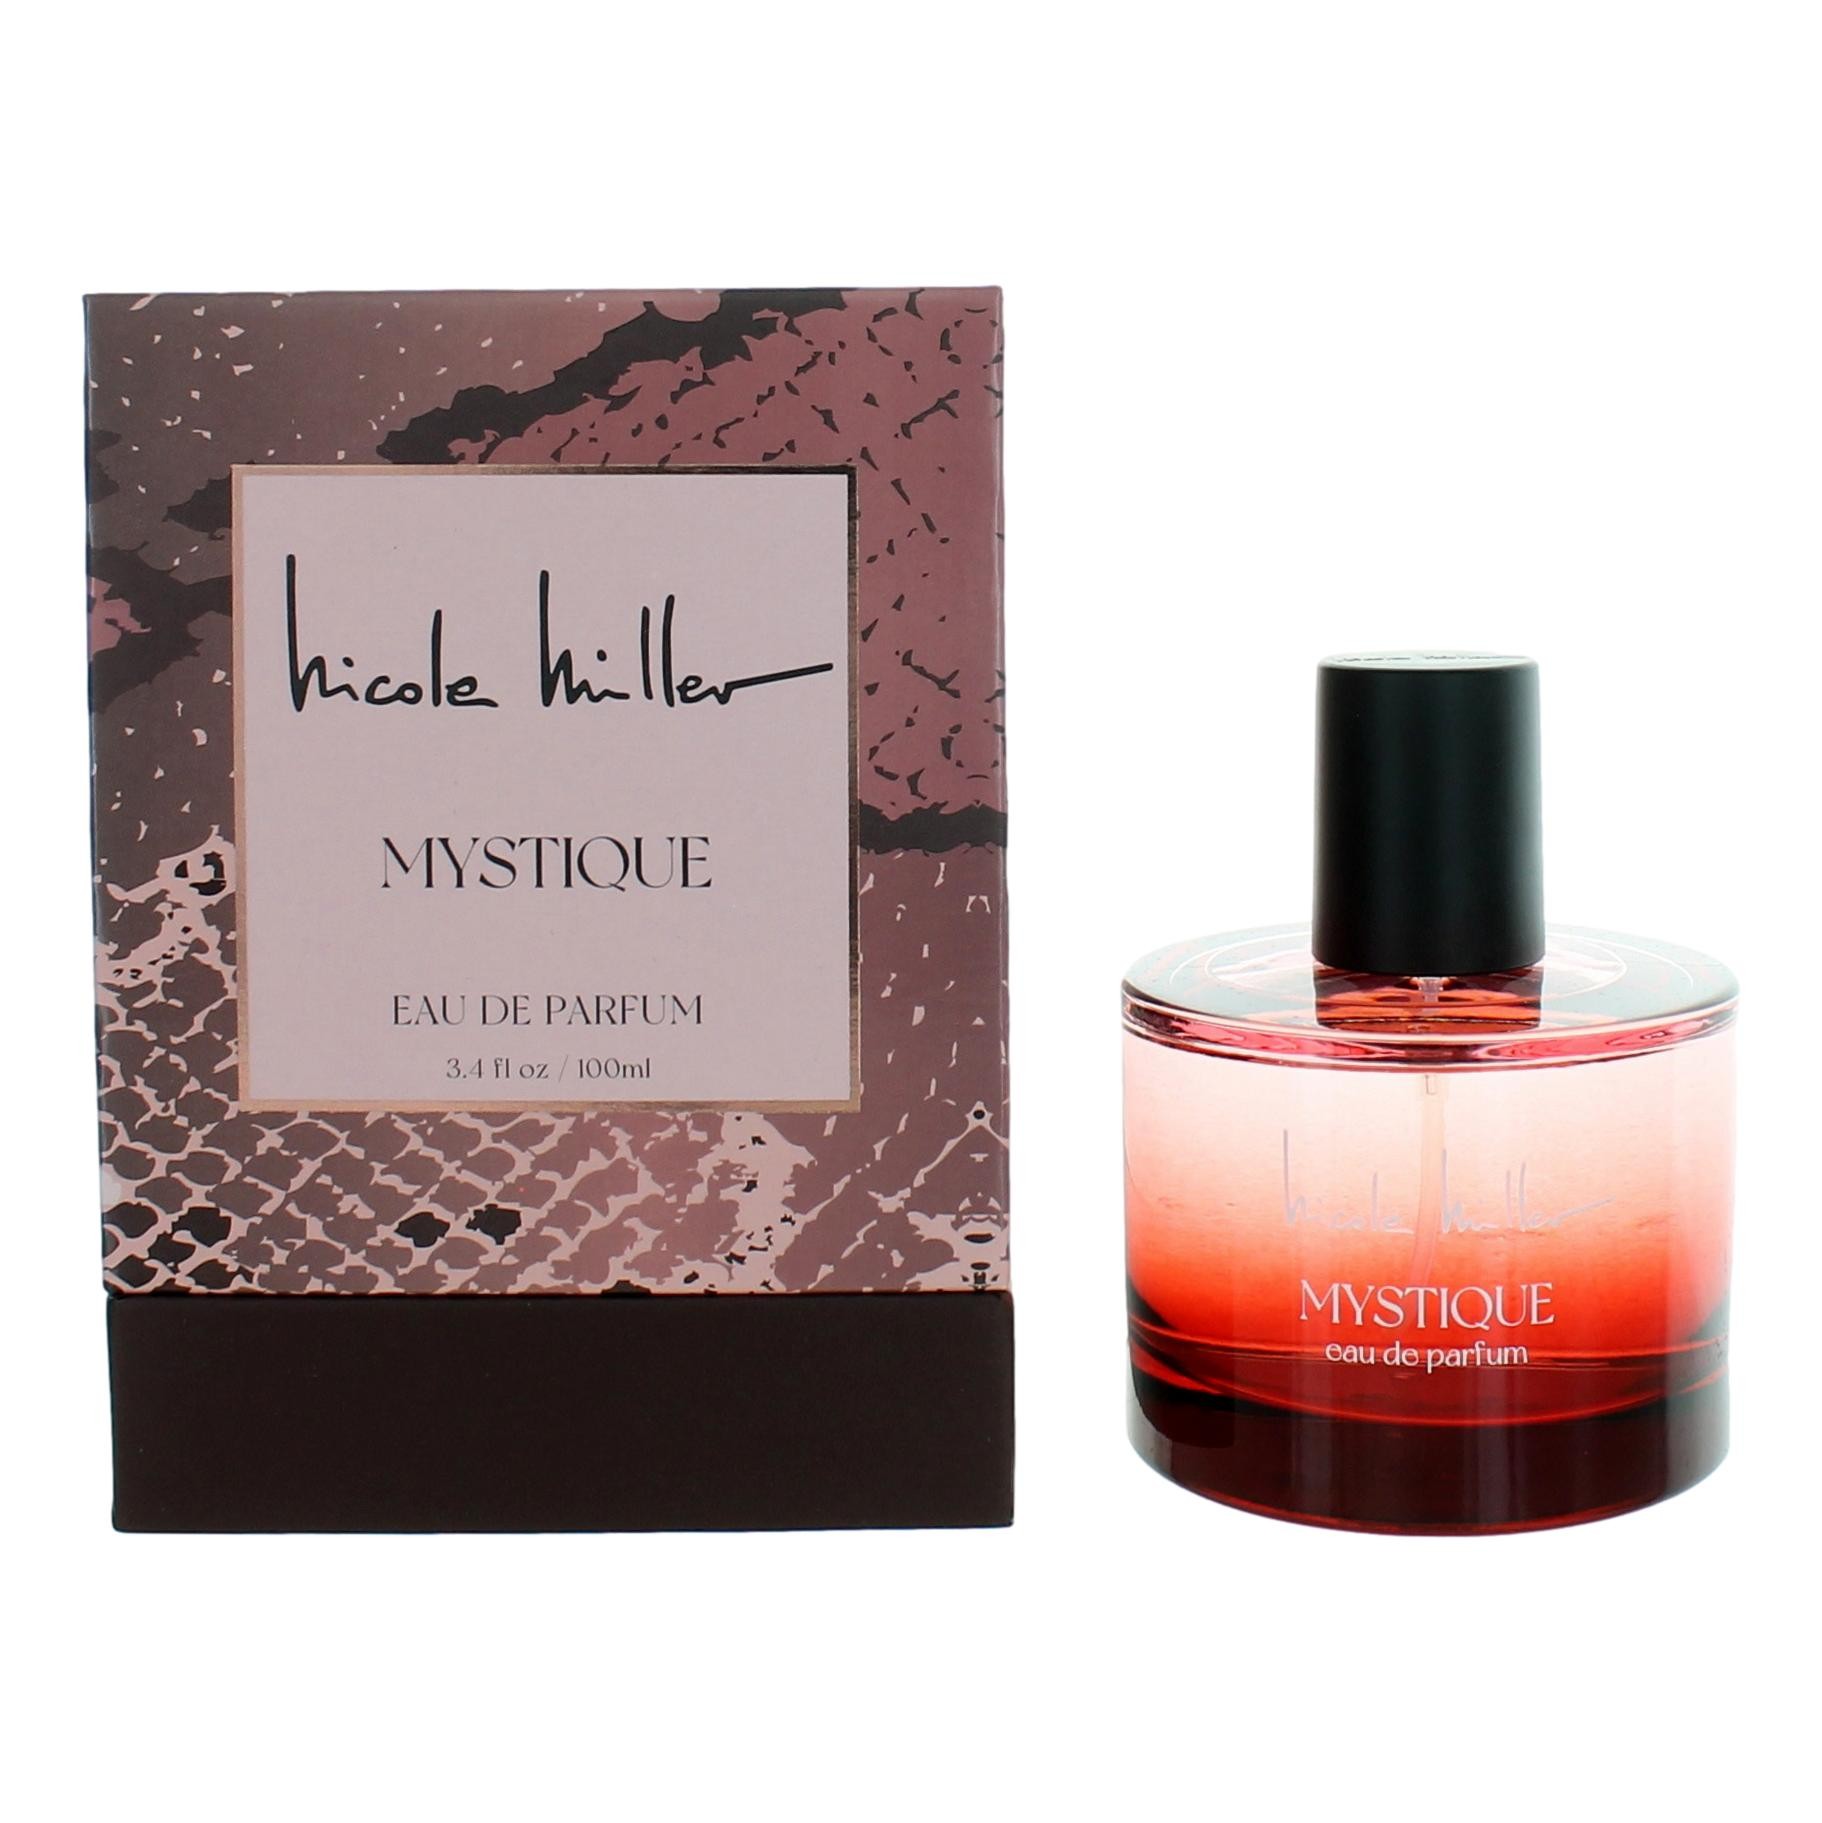 Mystique by Nicole Miller 3.4 oz Eau de Parfum Spray for Women